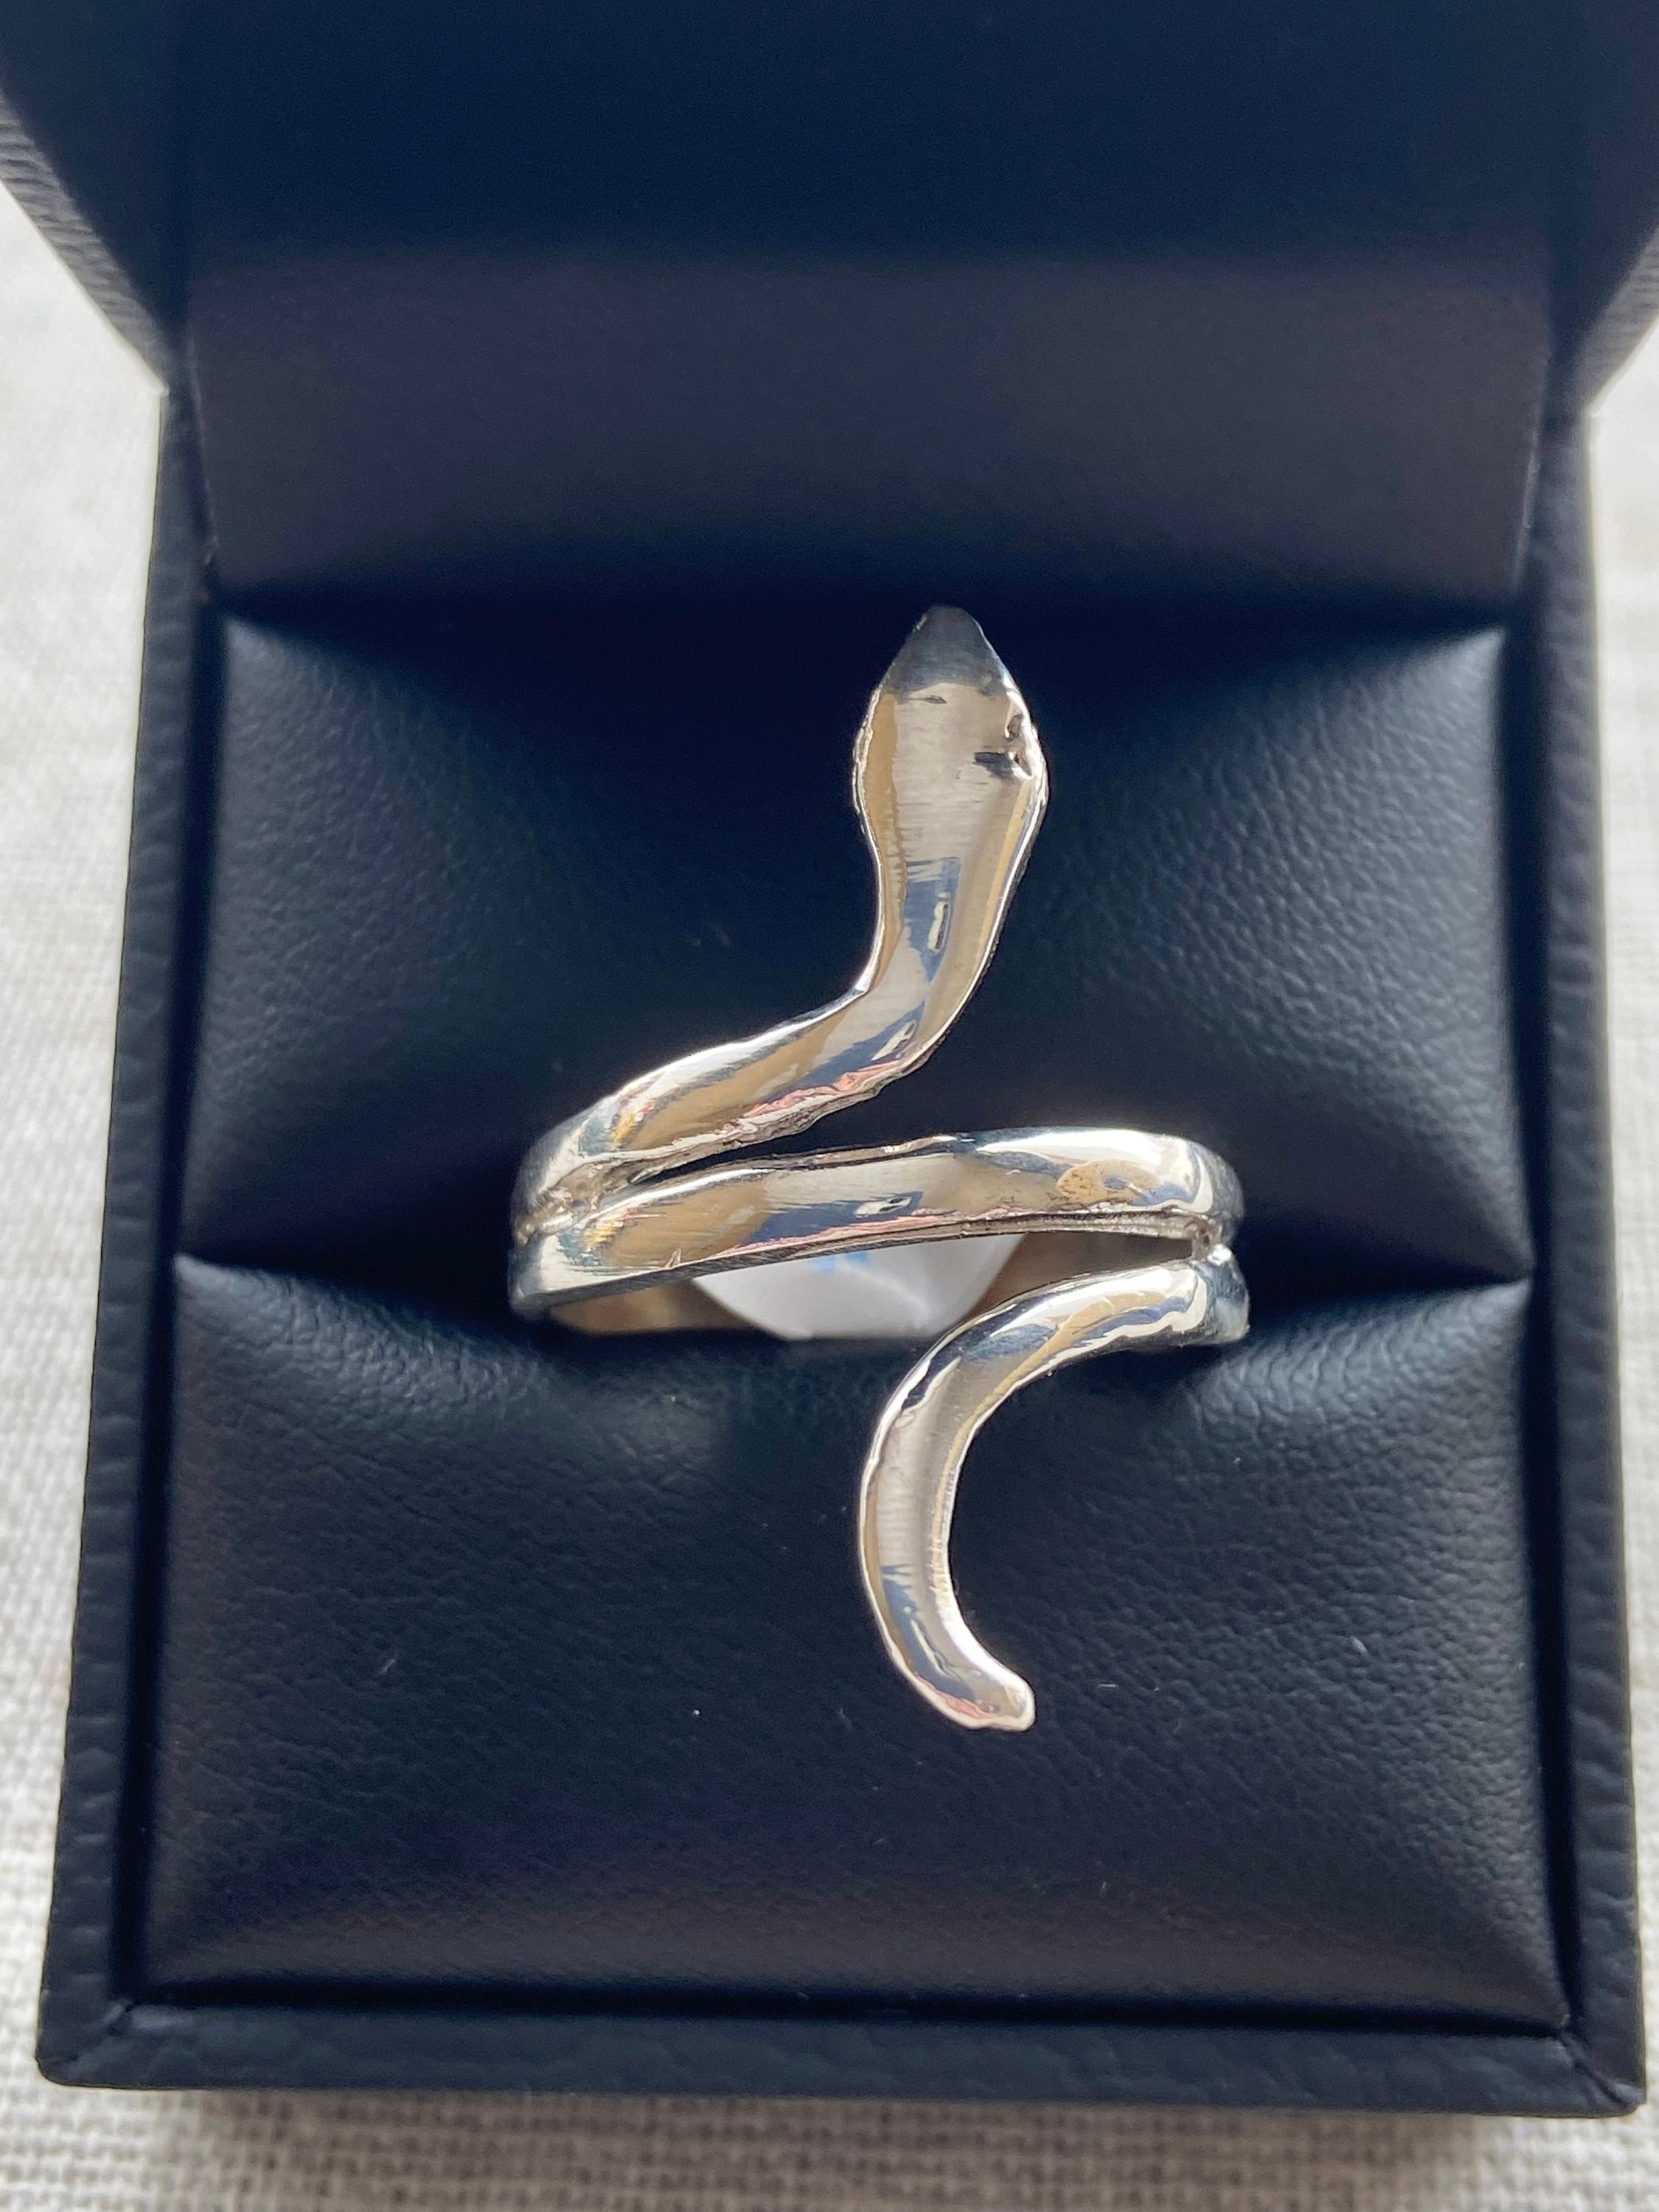 Isha Life Adiyogi Rudraksha With Copper Chain Snake Ring Bead Pendant  Locket | eBay